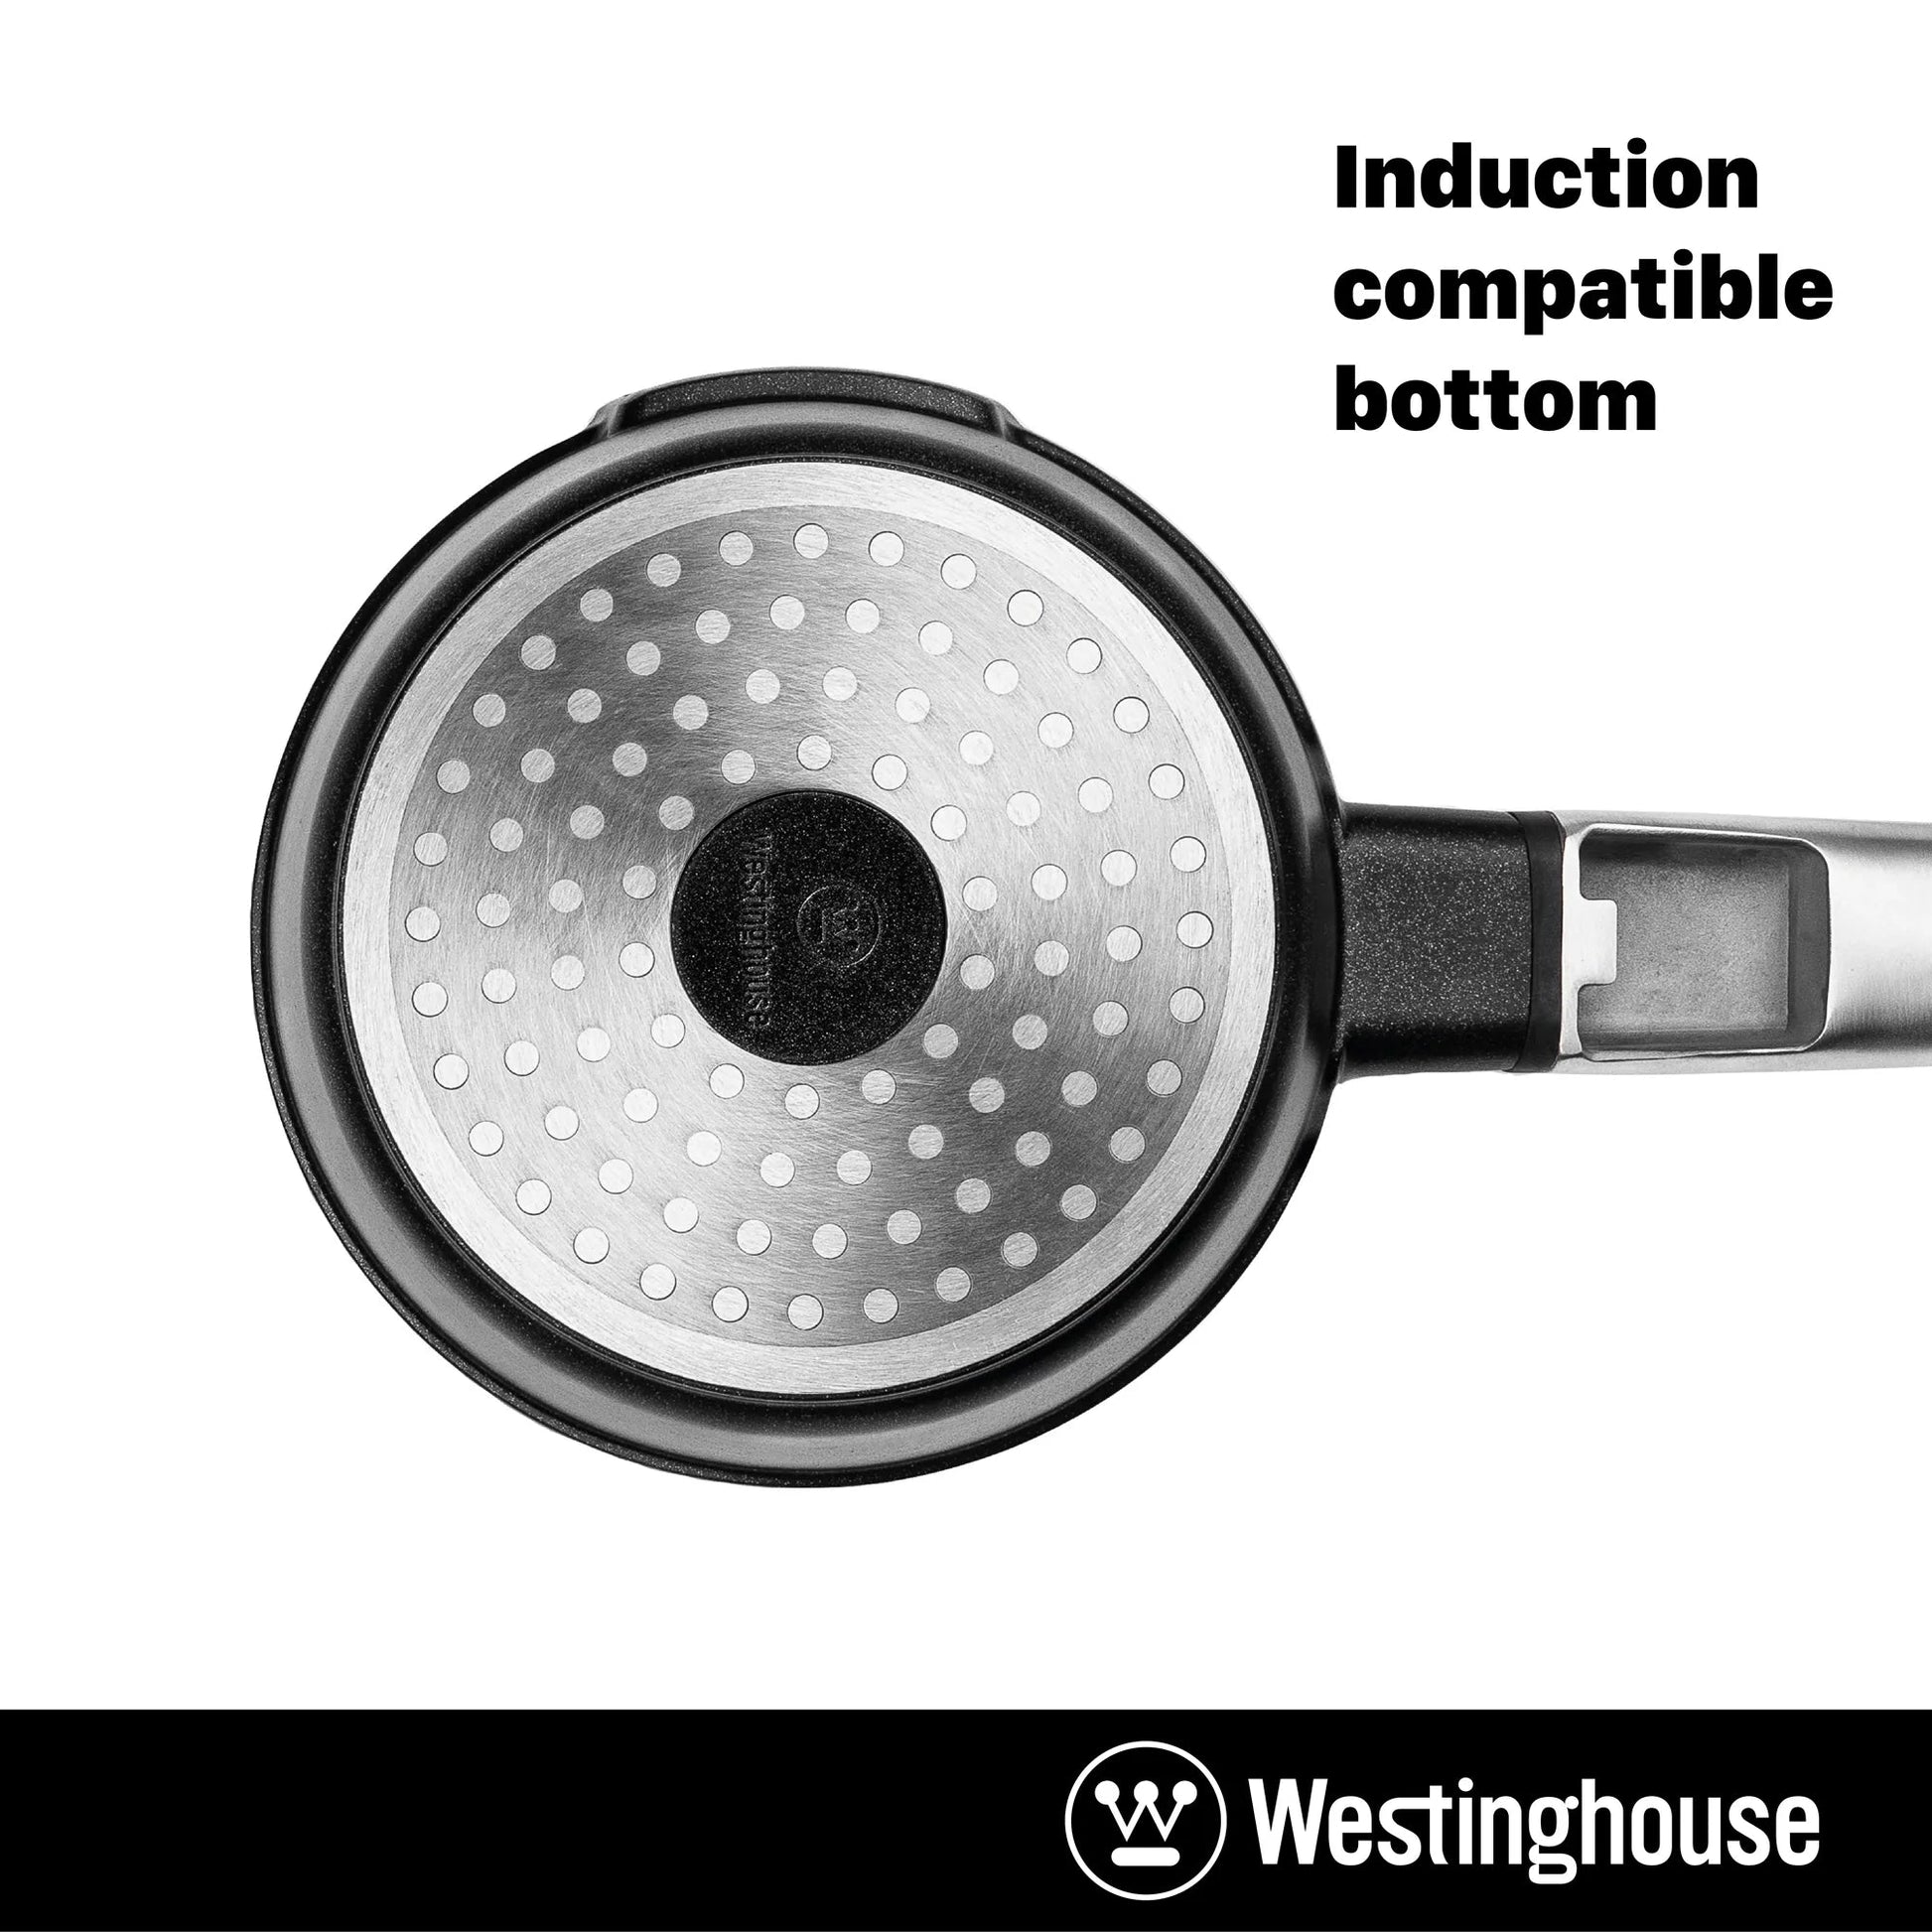 Westinghouse WH-5 2 qt. x 7 in. Cast Aluminum Sauce Pan with Quantanium Non-Stick, Black